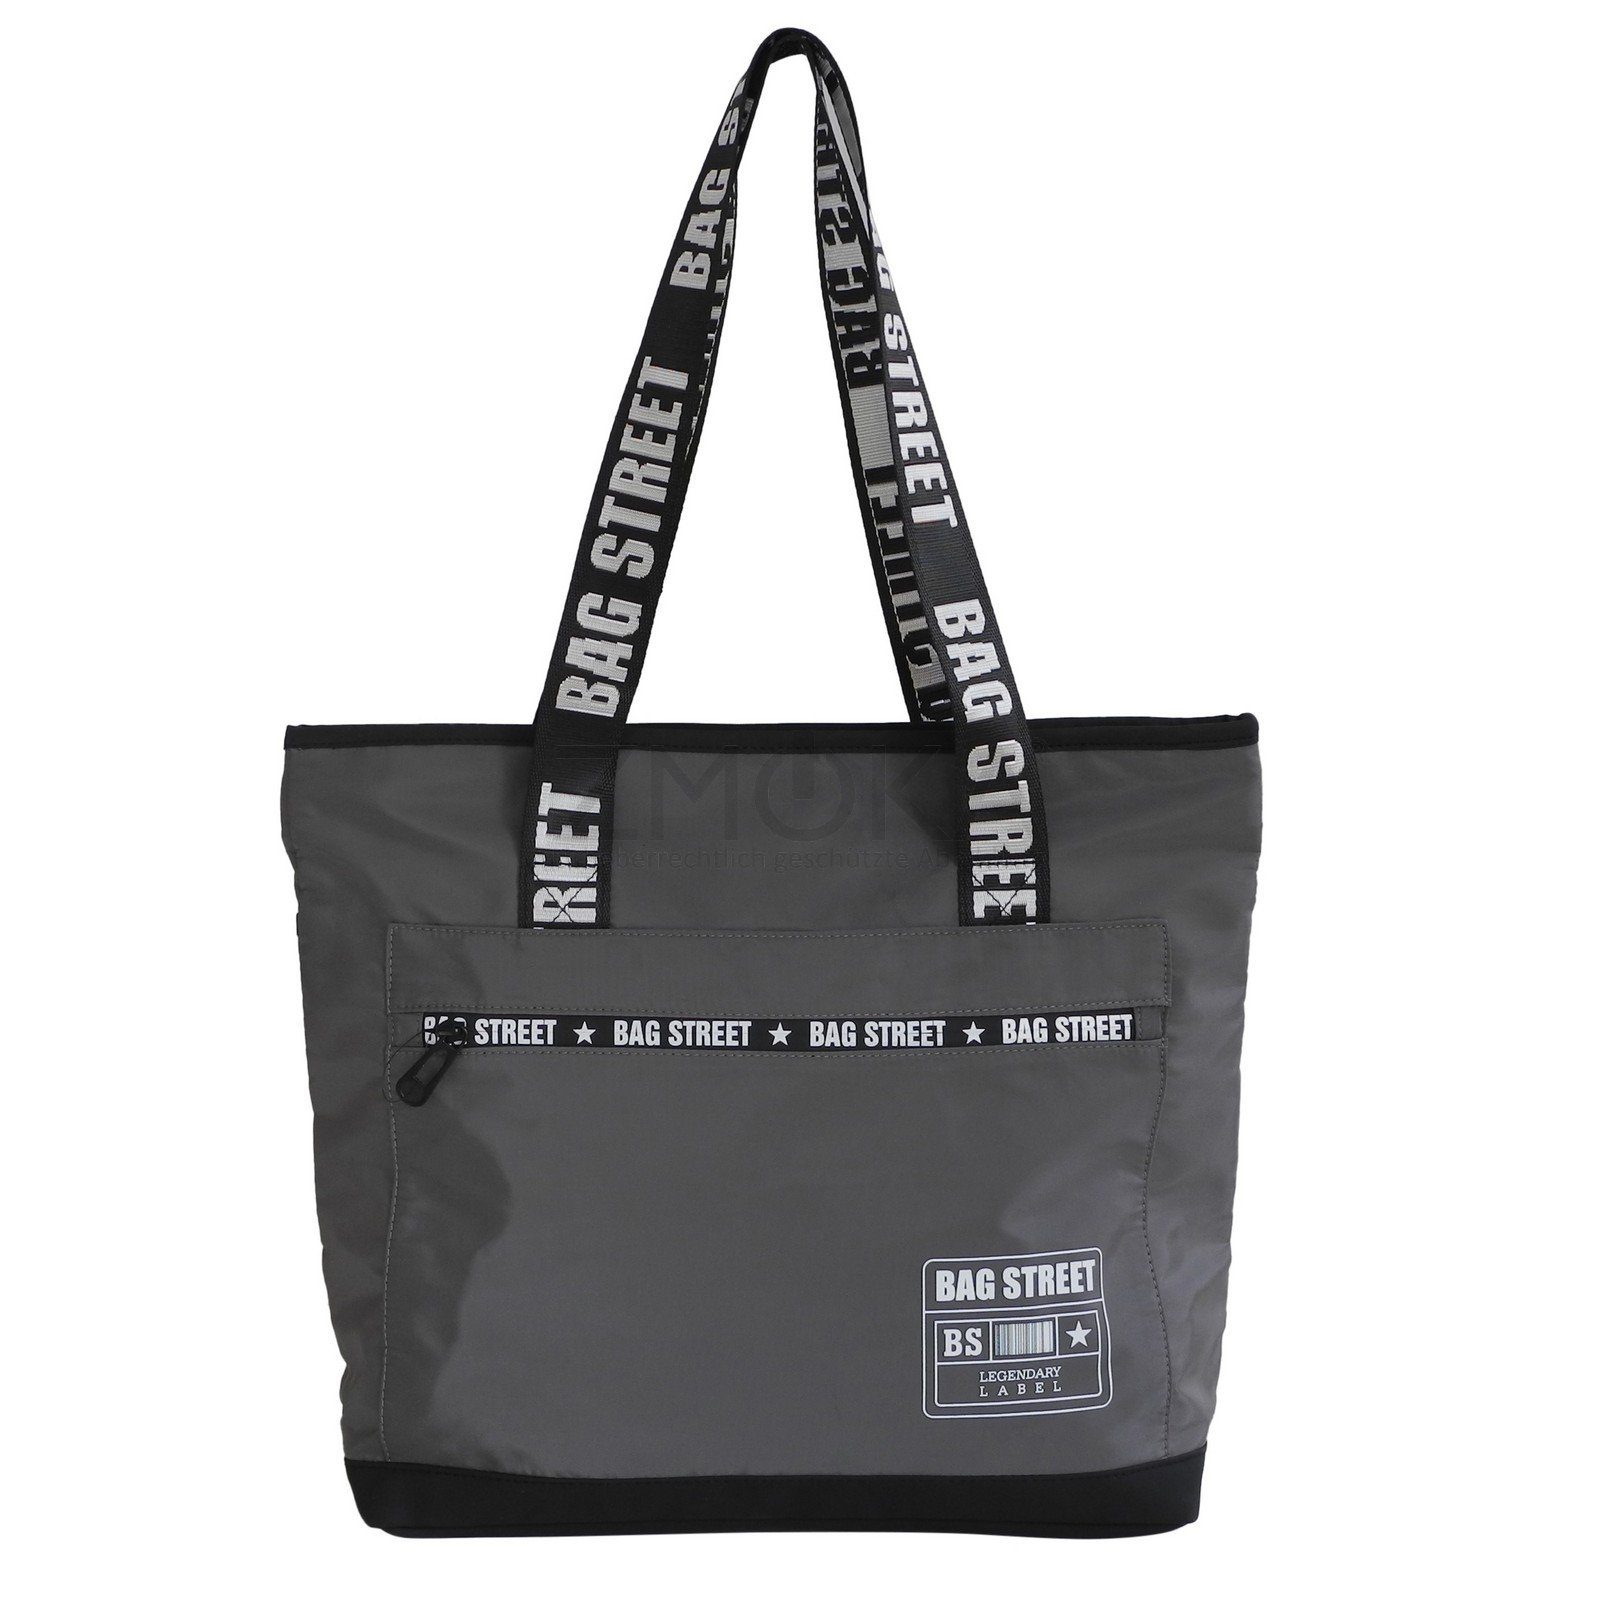 BAG STREET Handtasche Bag Street - leichter Damen Shopper Schultertasche Handtasche Auswahl Grau